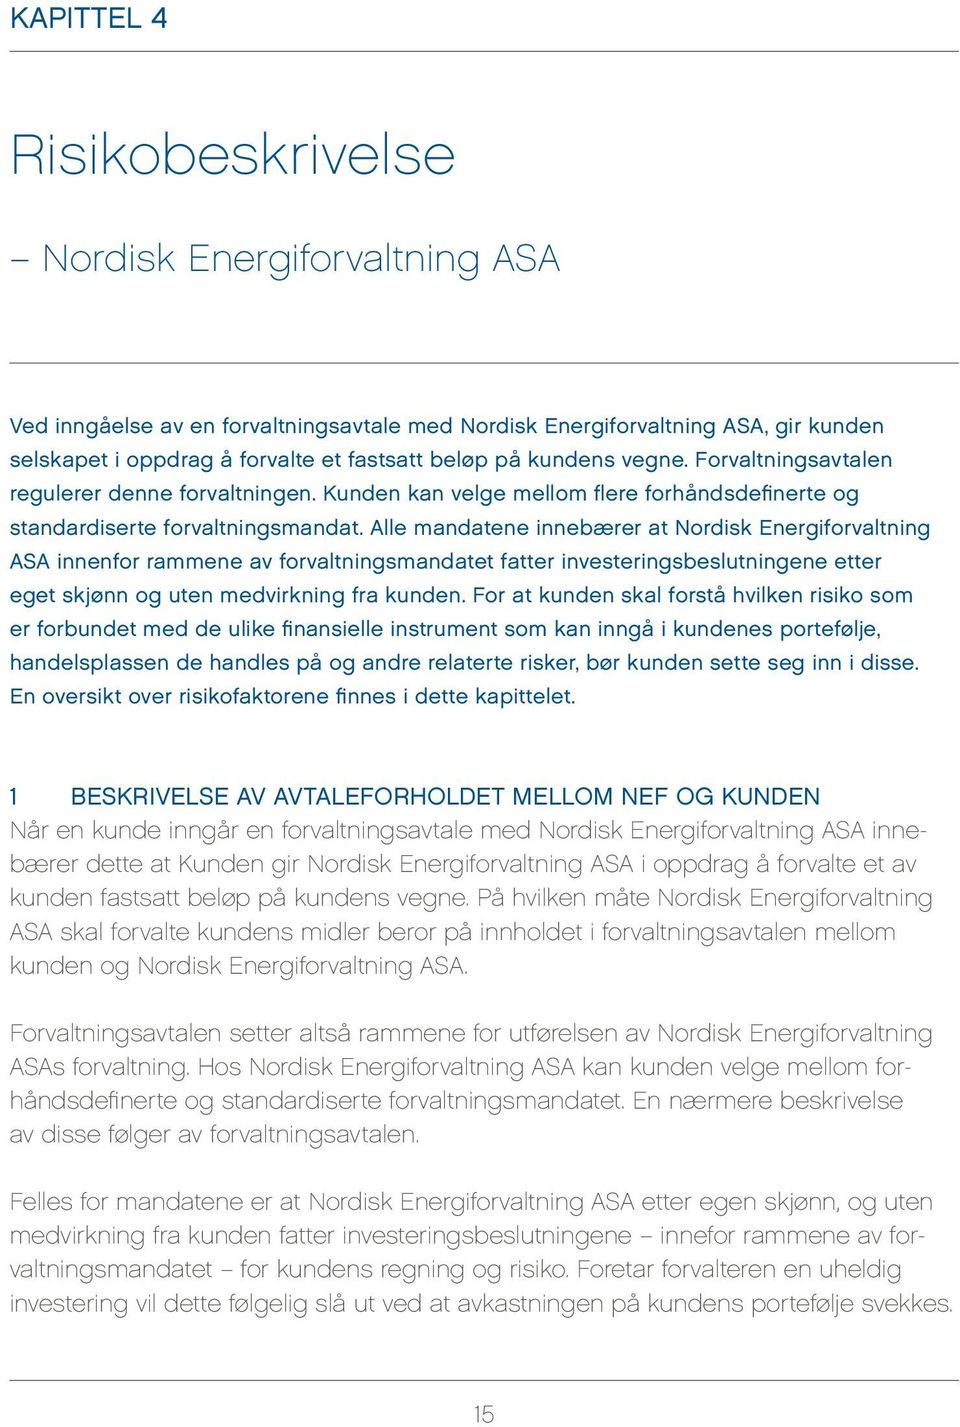 Alle mandatene innebærer at Nordisk Energiforvaltning ASA innenfor rammene av forvaltningsmandatet fatter investeringsbeslutningene etter eget skjønn og uten medvirkning fra kunden.